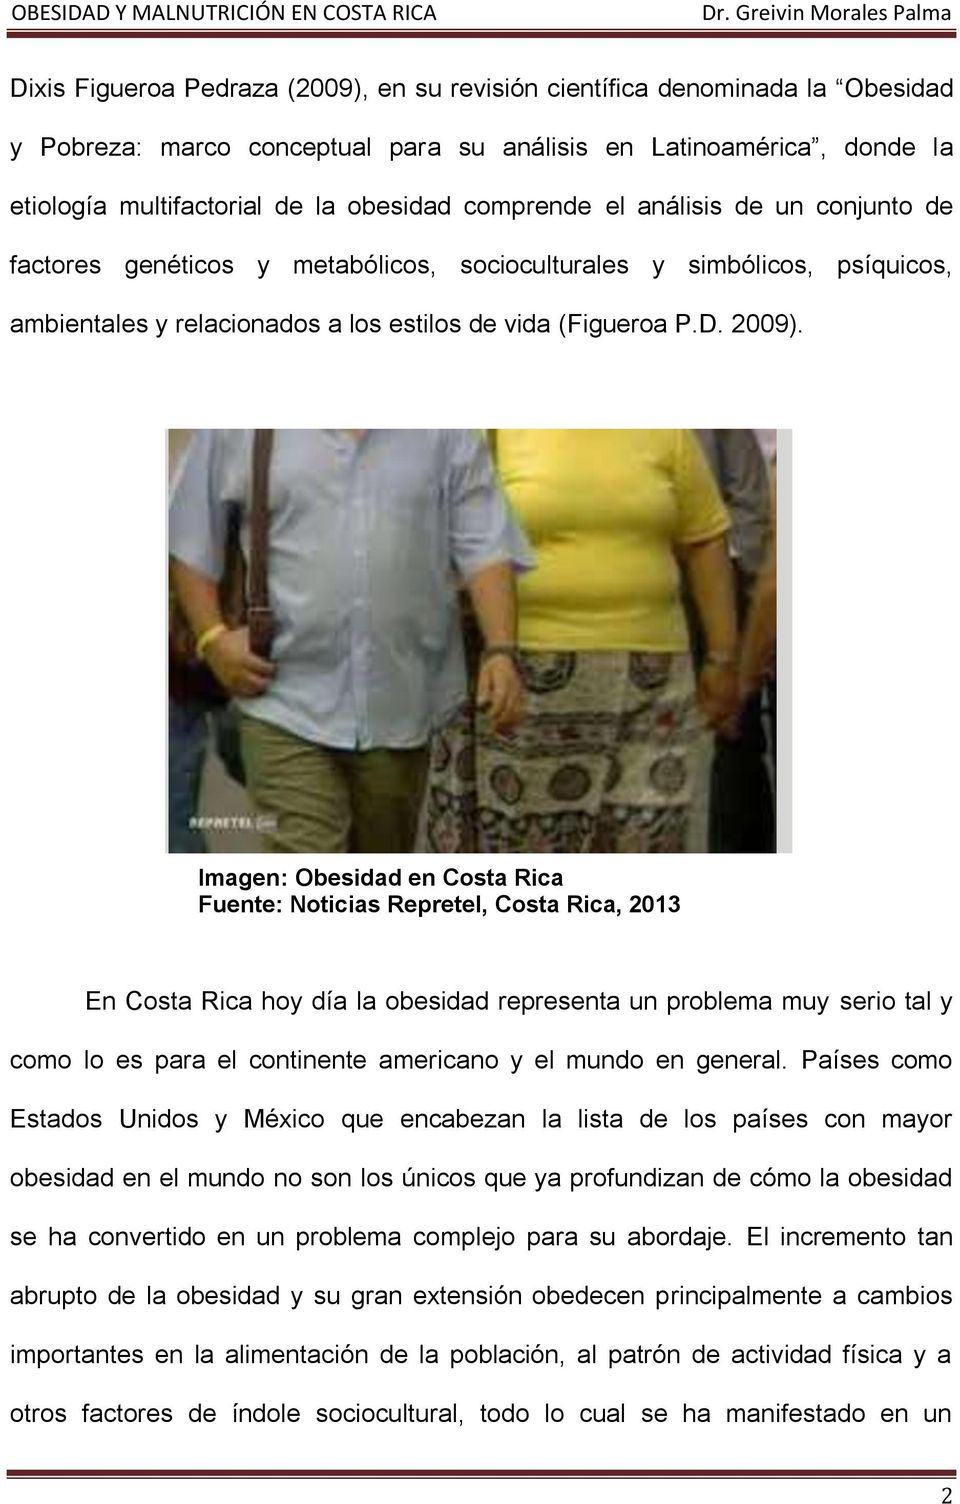 Imagen: Obesidad en Costa Rica Fuente: Noticias Repretel, Costa Rica, 2013 En Costa Rica hoy día la obesidad representa un problema muy serio tal y como lo es para el continente americano y el mundo